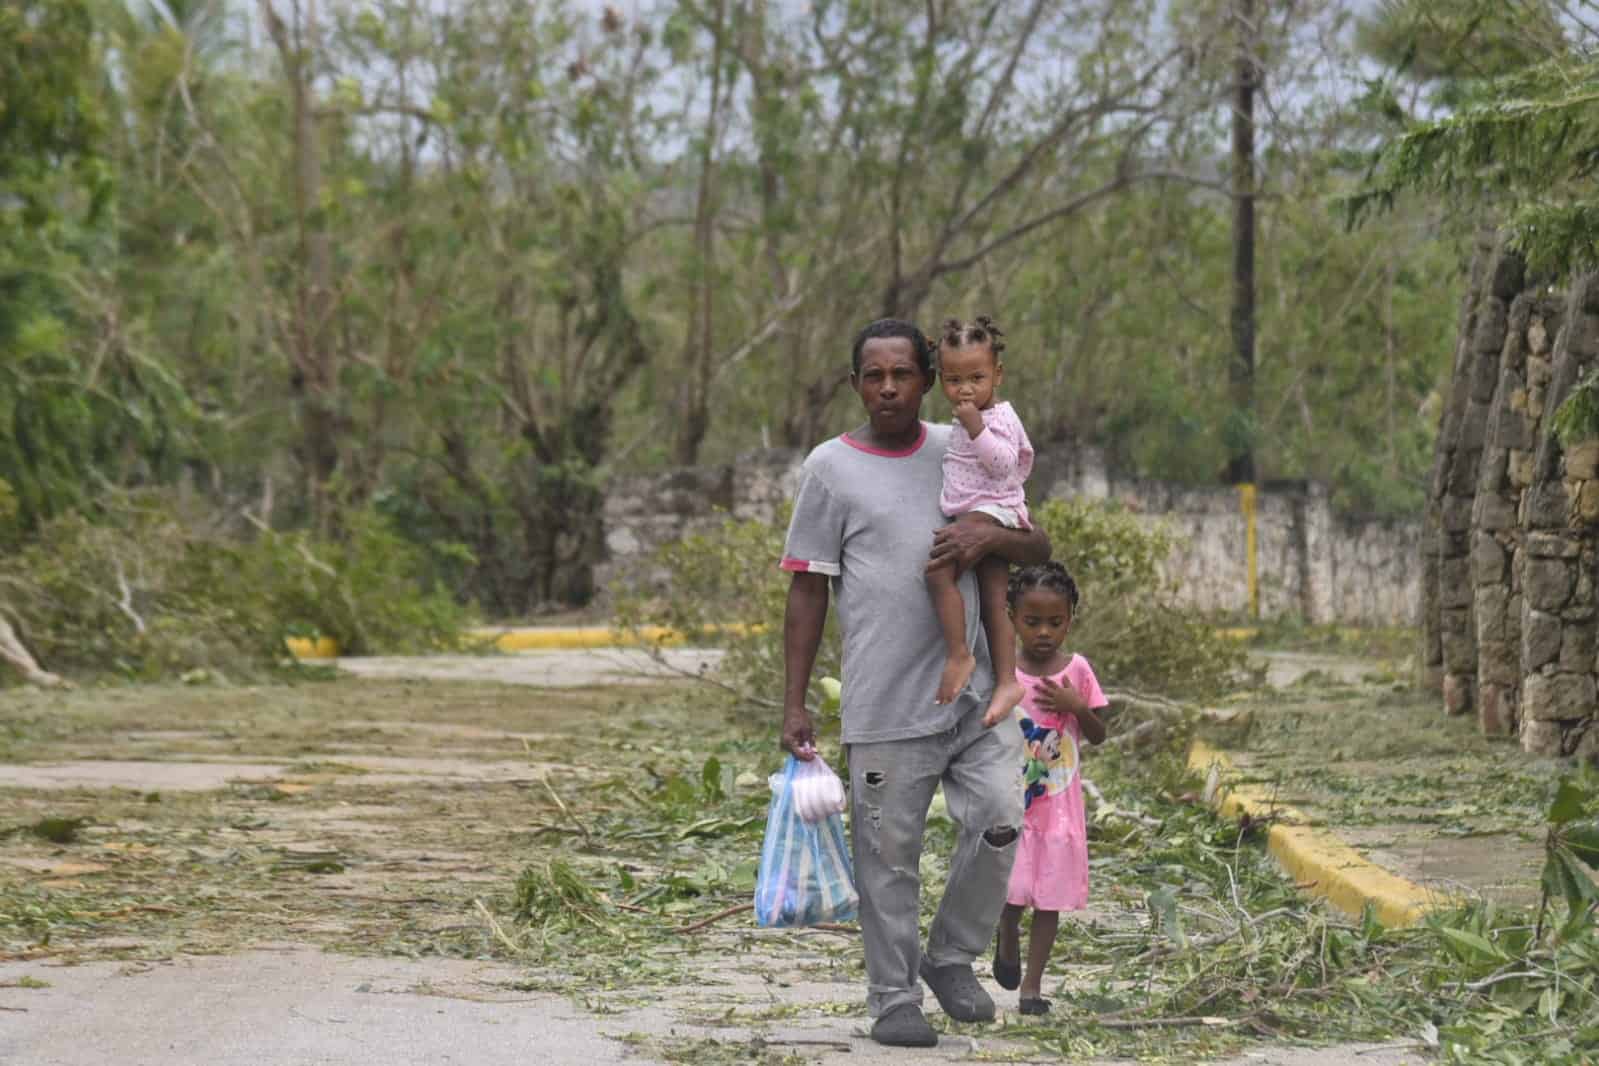 Un hombre y sus hijas regresan a pie tras adquirir alimentos en un sector cercano a Boca de Yuma.